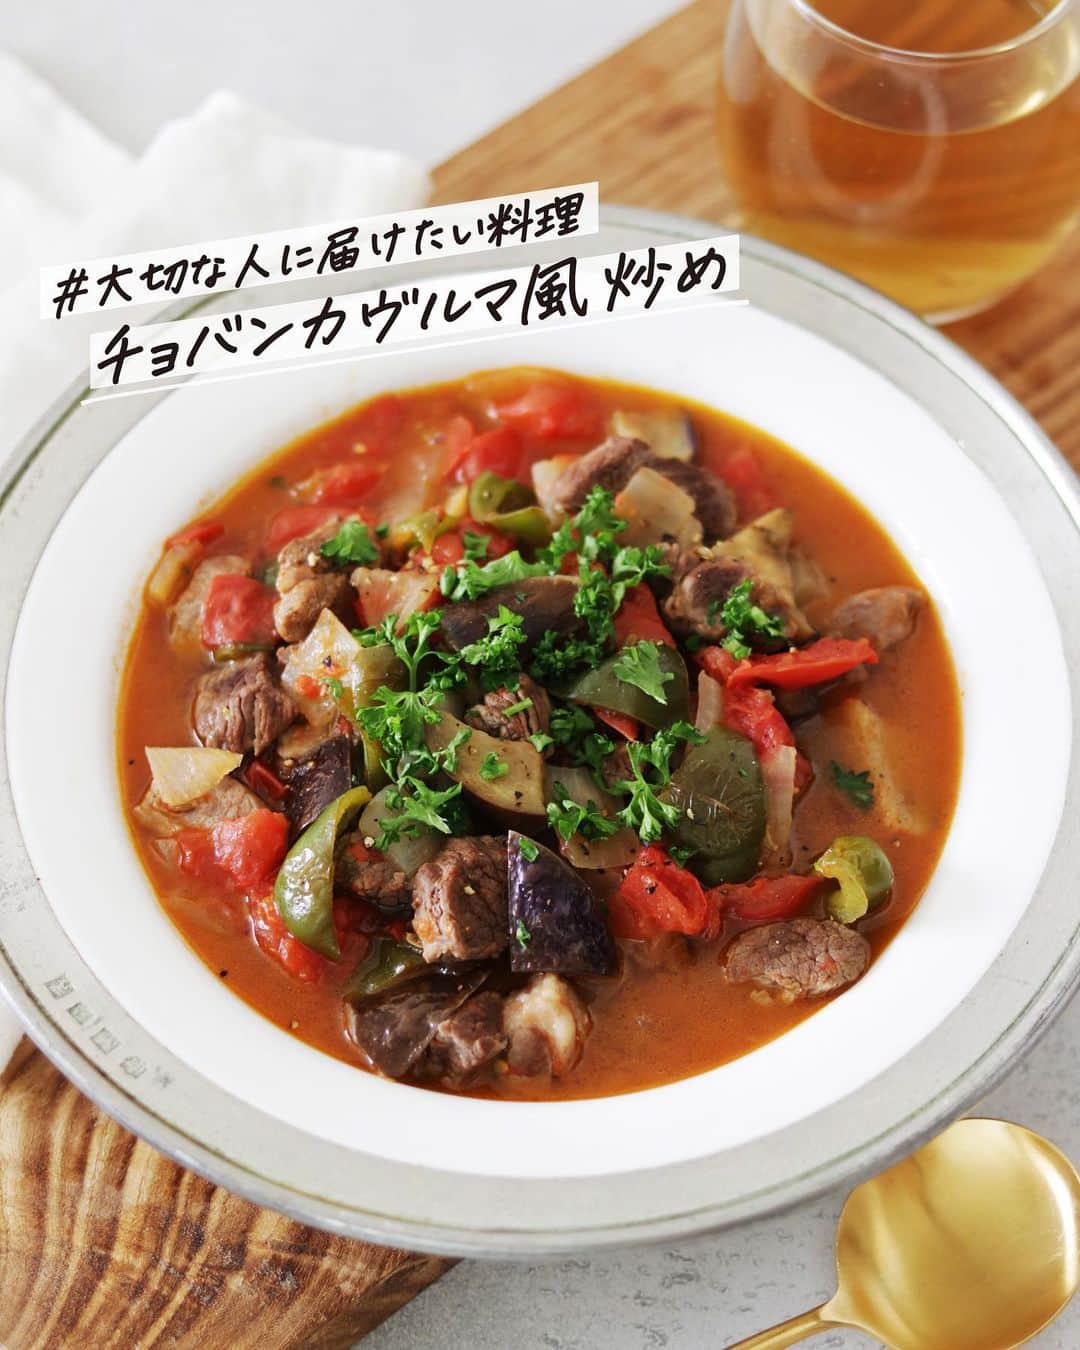 utoshのインスタグラム：「【レシピ付き】トルコのチョバンカヴルマ風、ラム肉炒め  トルコ料理と言えばのラム肉を使って、ラム肉の野菜炒め「チョバンカヴルマ」を作りました！トマトが入っていて、野菜からも水分がでるので炒め物というよりはスープという感じの料理です。（材料は日本で普通に手に入る物にしているので、チョバンカヴルマ風って感じです！）  そして、この料理は、フーディーテーブル @foodietable.jp さんの「トルコ・シリア復興支援」のレシピとして、協力させて頂きました。  #大切な人に届けたい料理 #トルコシリア復興支援ハートデリバリープロジェクト #フーディスト  の3つのハッシュタグをつけた投稿を企画ページから「投稿したという事」をお送りしてもらえたら1件につき100円を認定NPO法人 国連WFP協会に寄付させていただけるという事です。  「大切な人に届けたい料理」という事であるなら、どんな料理でも大丈夫です。この企画にぜひ参加してみてください。  5月8日の正午までなのでぜひぜひラストスパートよろしくお願いします。  ー／ー／ー／ー  チョバンカヴルマ風、ラム肉の野菜炒め（2人分）  【材料】 ラム肉 200g トマト 2個 ピーマン 1個 ナス 1個 玉ねぎ 1/2個  オリーブオイル　大さじ2  A パプリカパウダー　適量 フェンネルシード（あれば）適量 塩　小さじ1/4〜1/2  〈トッピング〉 刻みパセリ　適量 黒コショウ　適量  【作り方】 （1）ラム肉を小さめに切る。トマト、ピーマン、ナス、玉ねぎを全て1cm角程度の大きさに切っておく。  （2）フライパンにオリーブオイルを中火で熱し、玉ねぎとピーマンを炒め、ラム肉とナスを加えてさらに炒めあわせる。  （3）トマトを最後に加えたら、Aを入れて蓋をして弱火で10分煮込んだら完成。お皿に盛りつけて、お好みで刻んだパセリを乗せ黒コショウをふる。  ー／ー／ー／ー  #トレビス #サラダ #和え物 #フルーツサラダ #utoskitchen #おうちごはん #簡単料理 #フーディーテーブル」